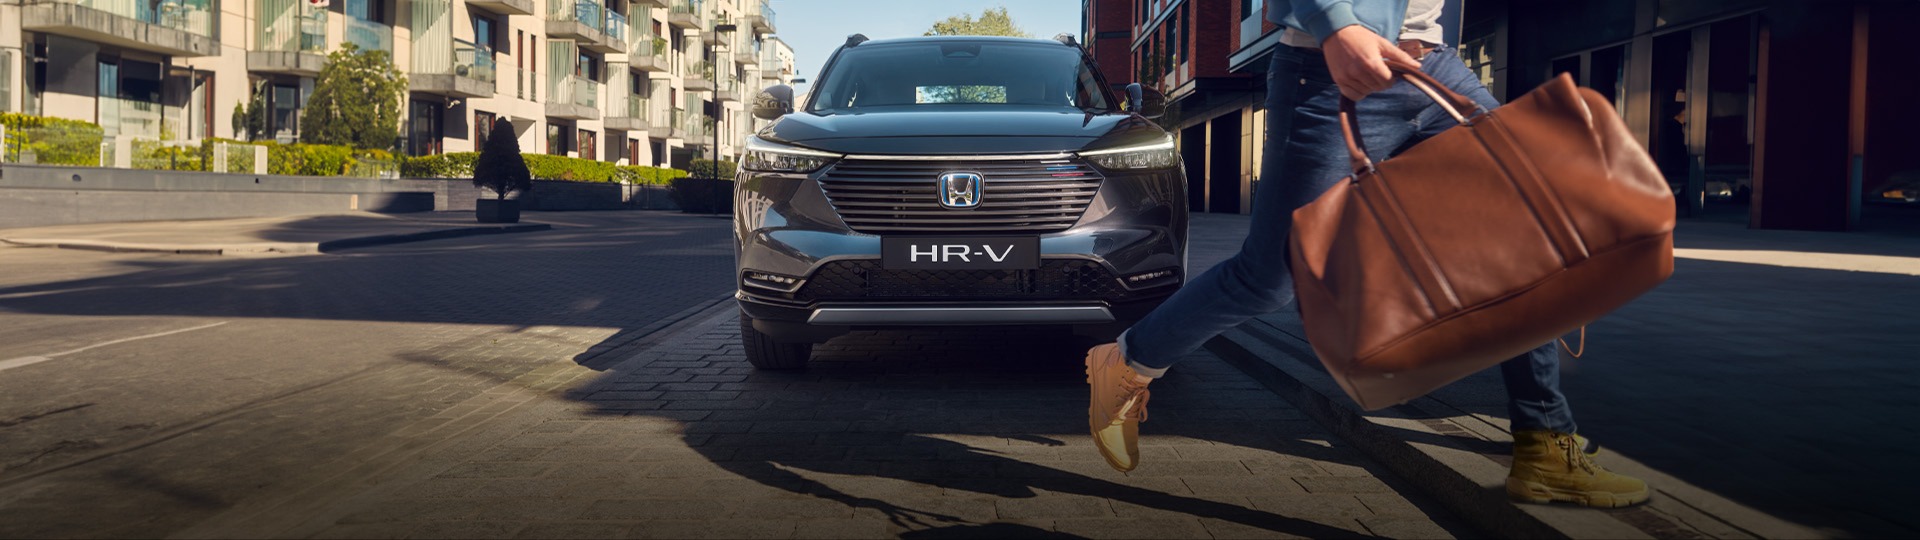 Honda Plaza  Kardelen Hayalinizdeki HR-V'ye giden yolu kısalttık.